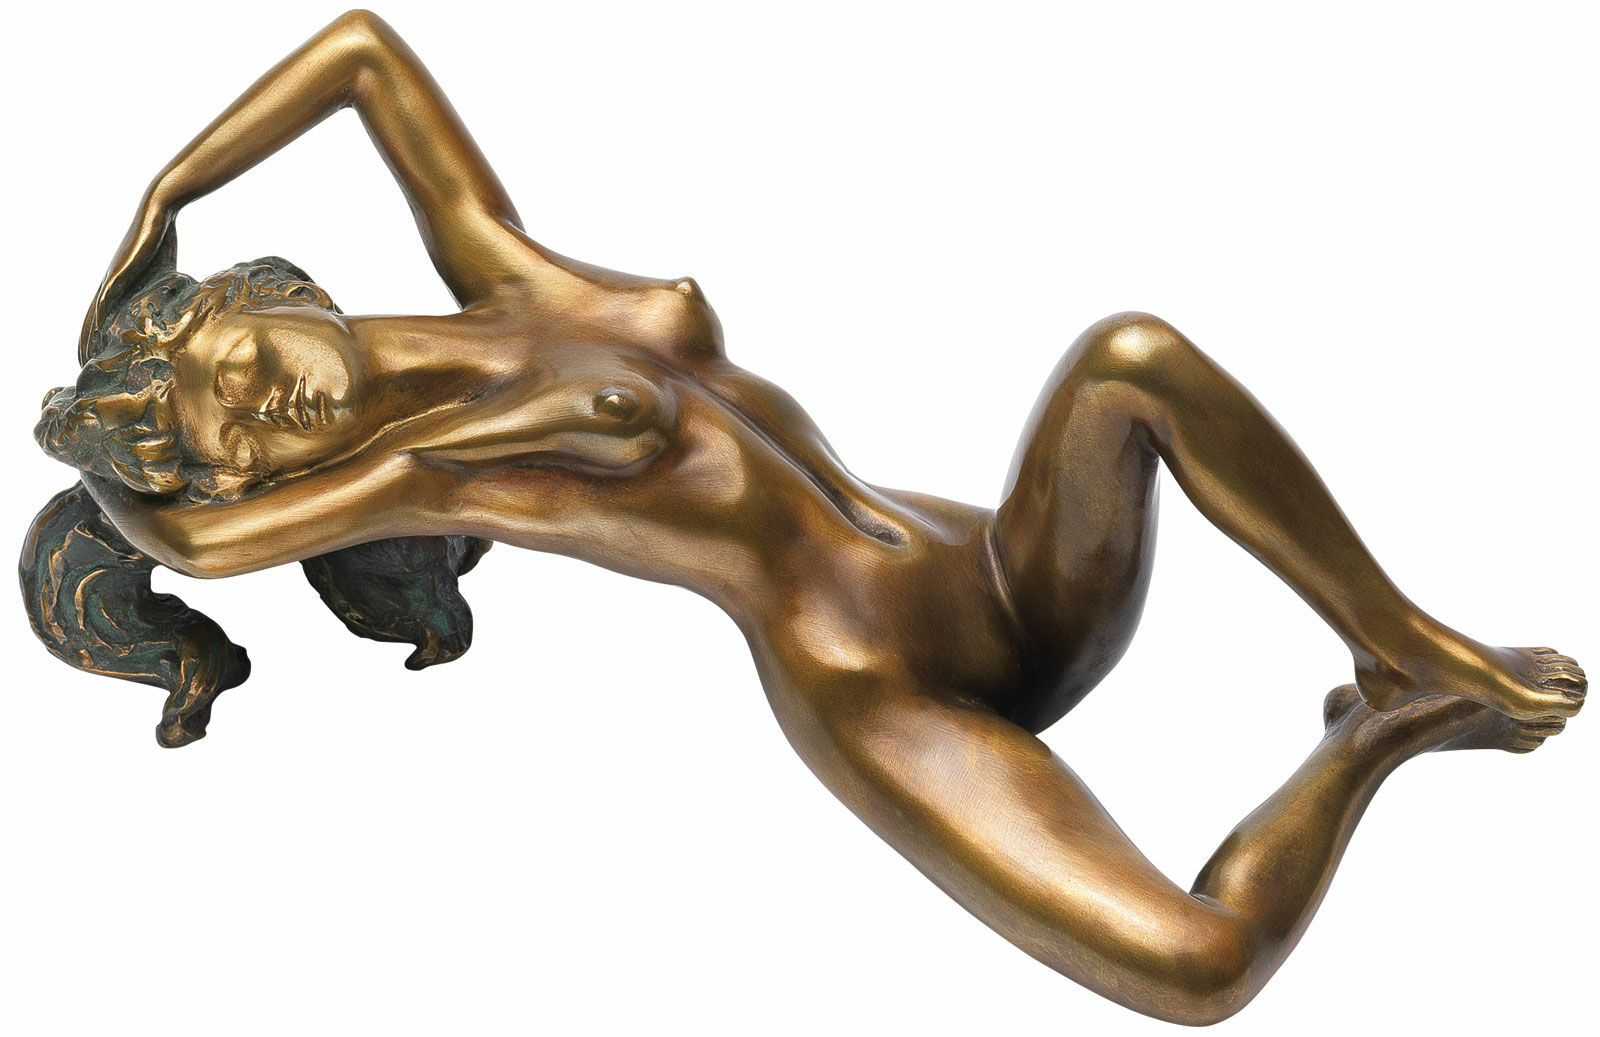 Skulptur "Båret af drømmeagtig lykke", bronze von Erwin A. Schinzel